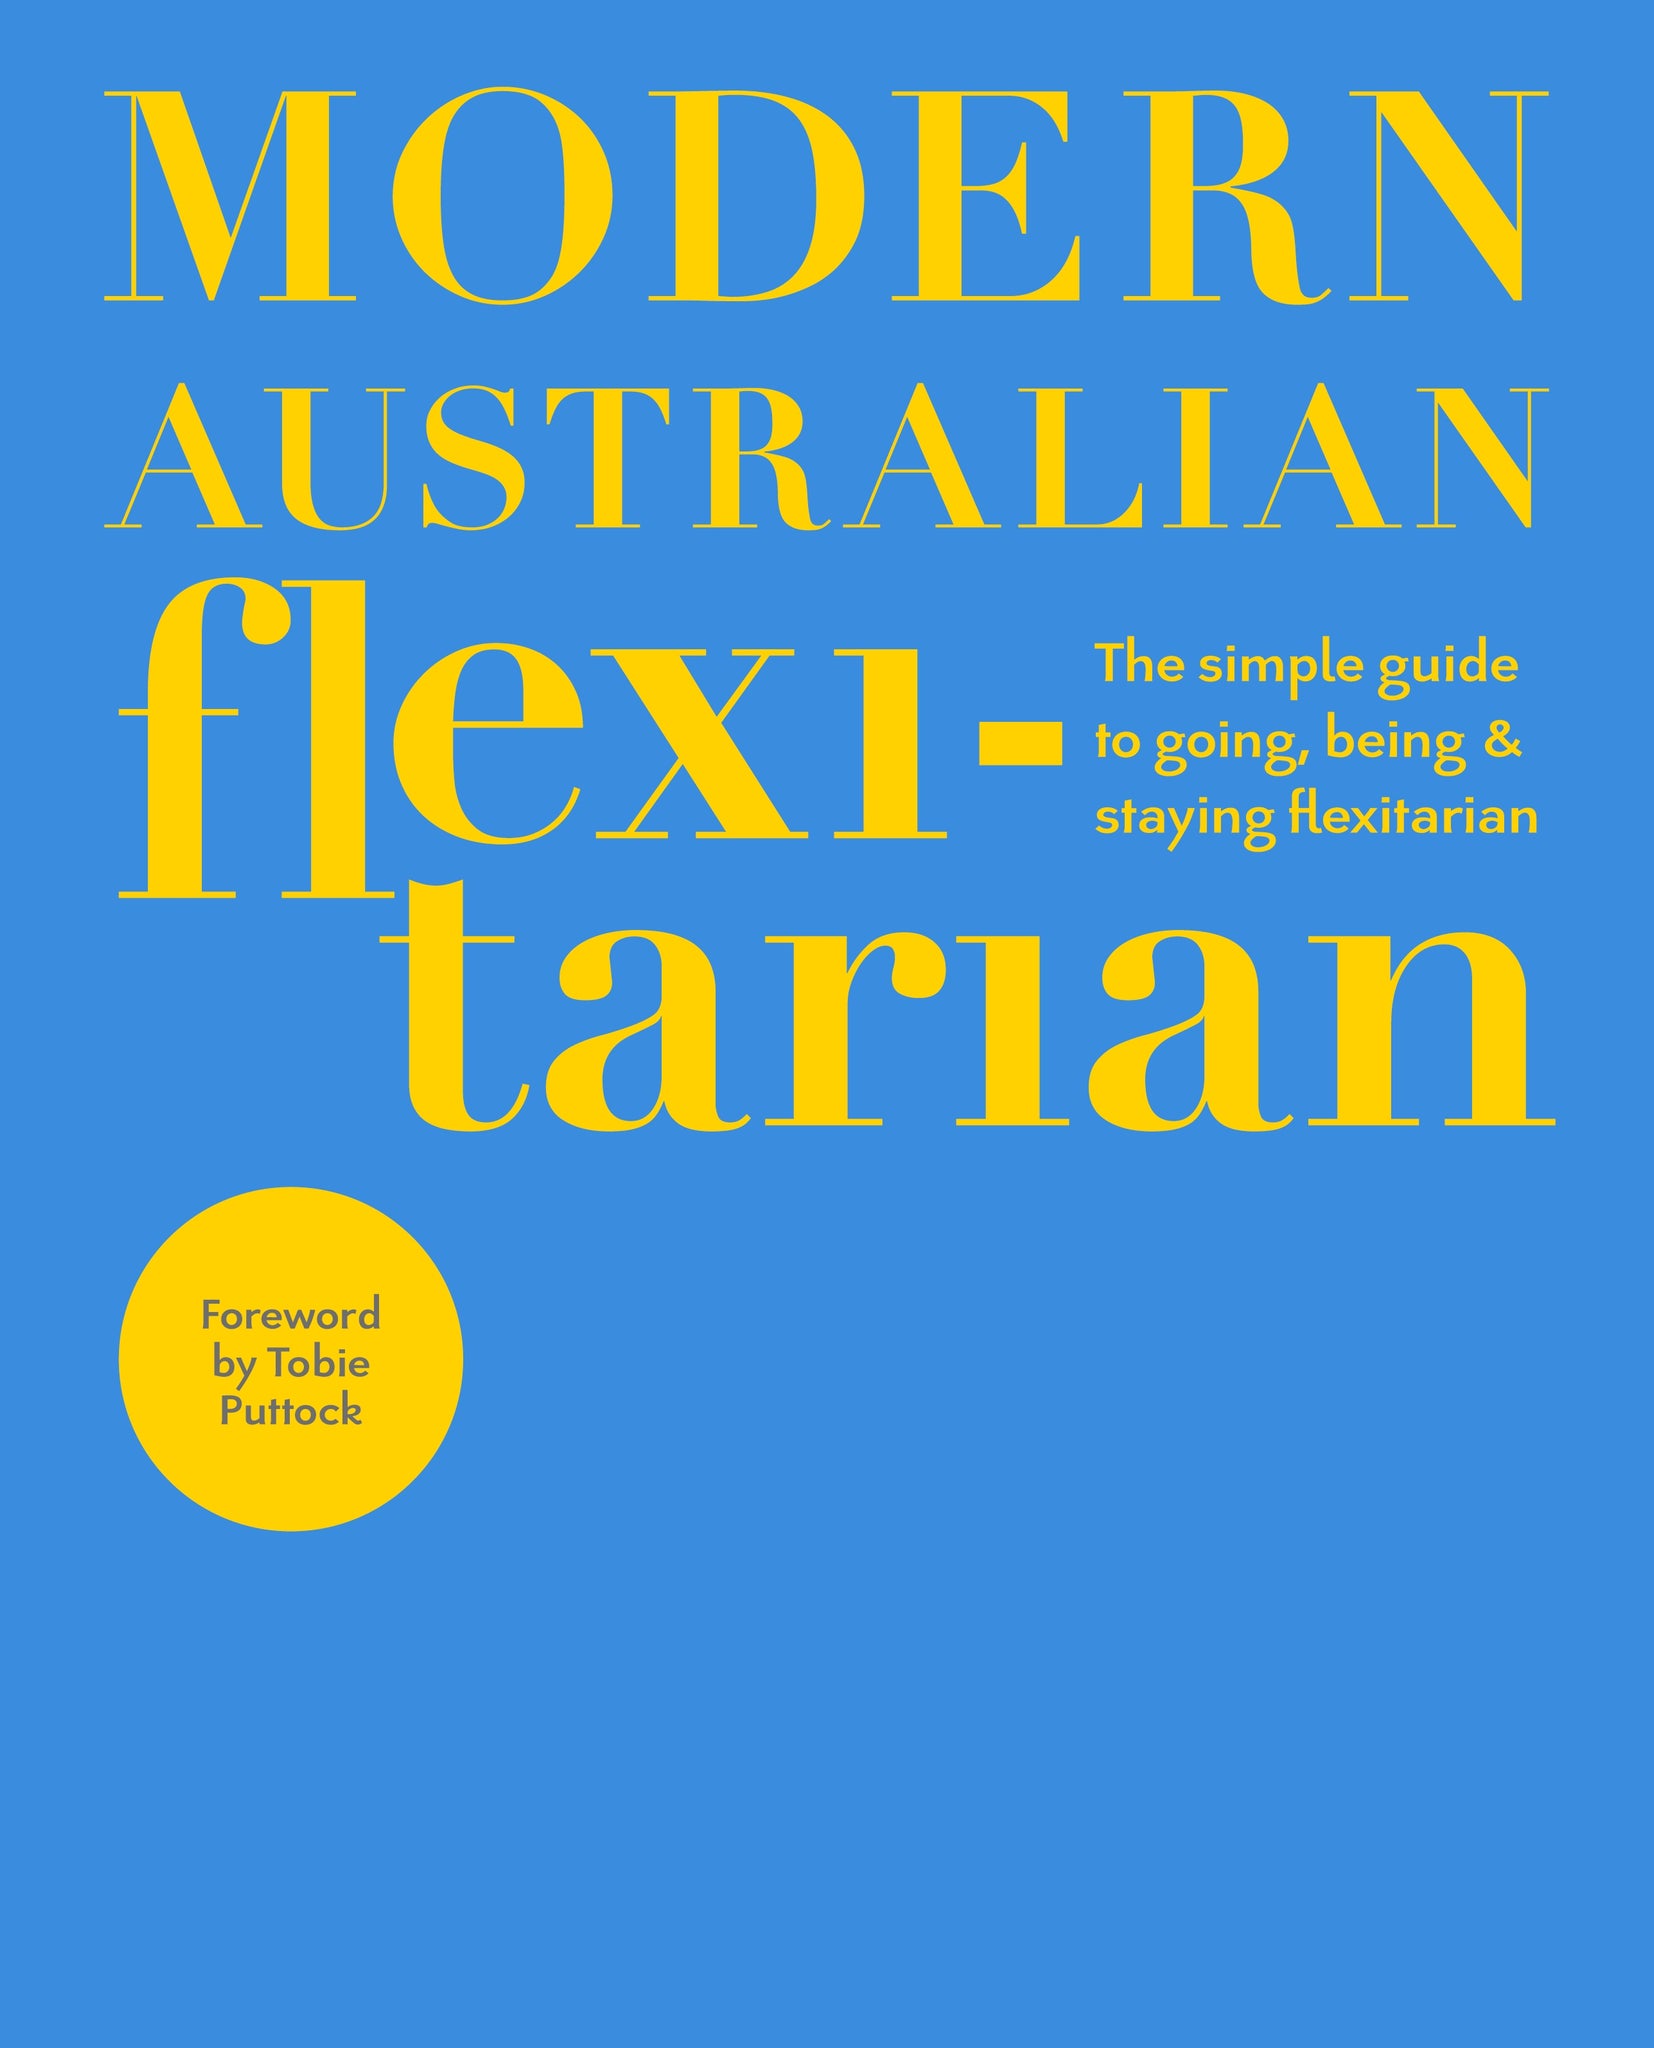 Modern Australian Flexitarian - DK Australia